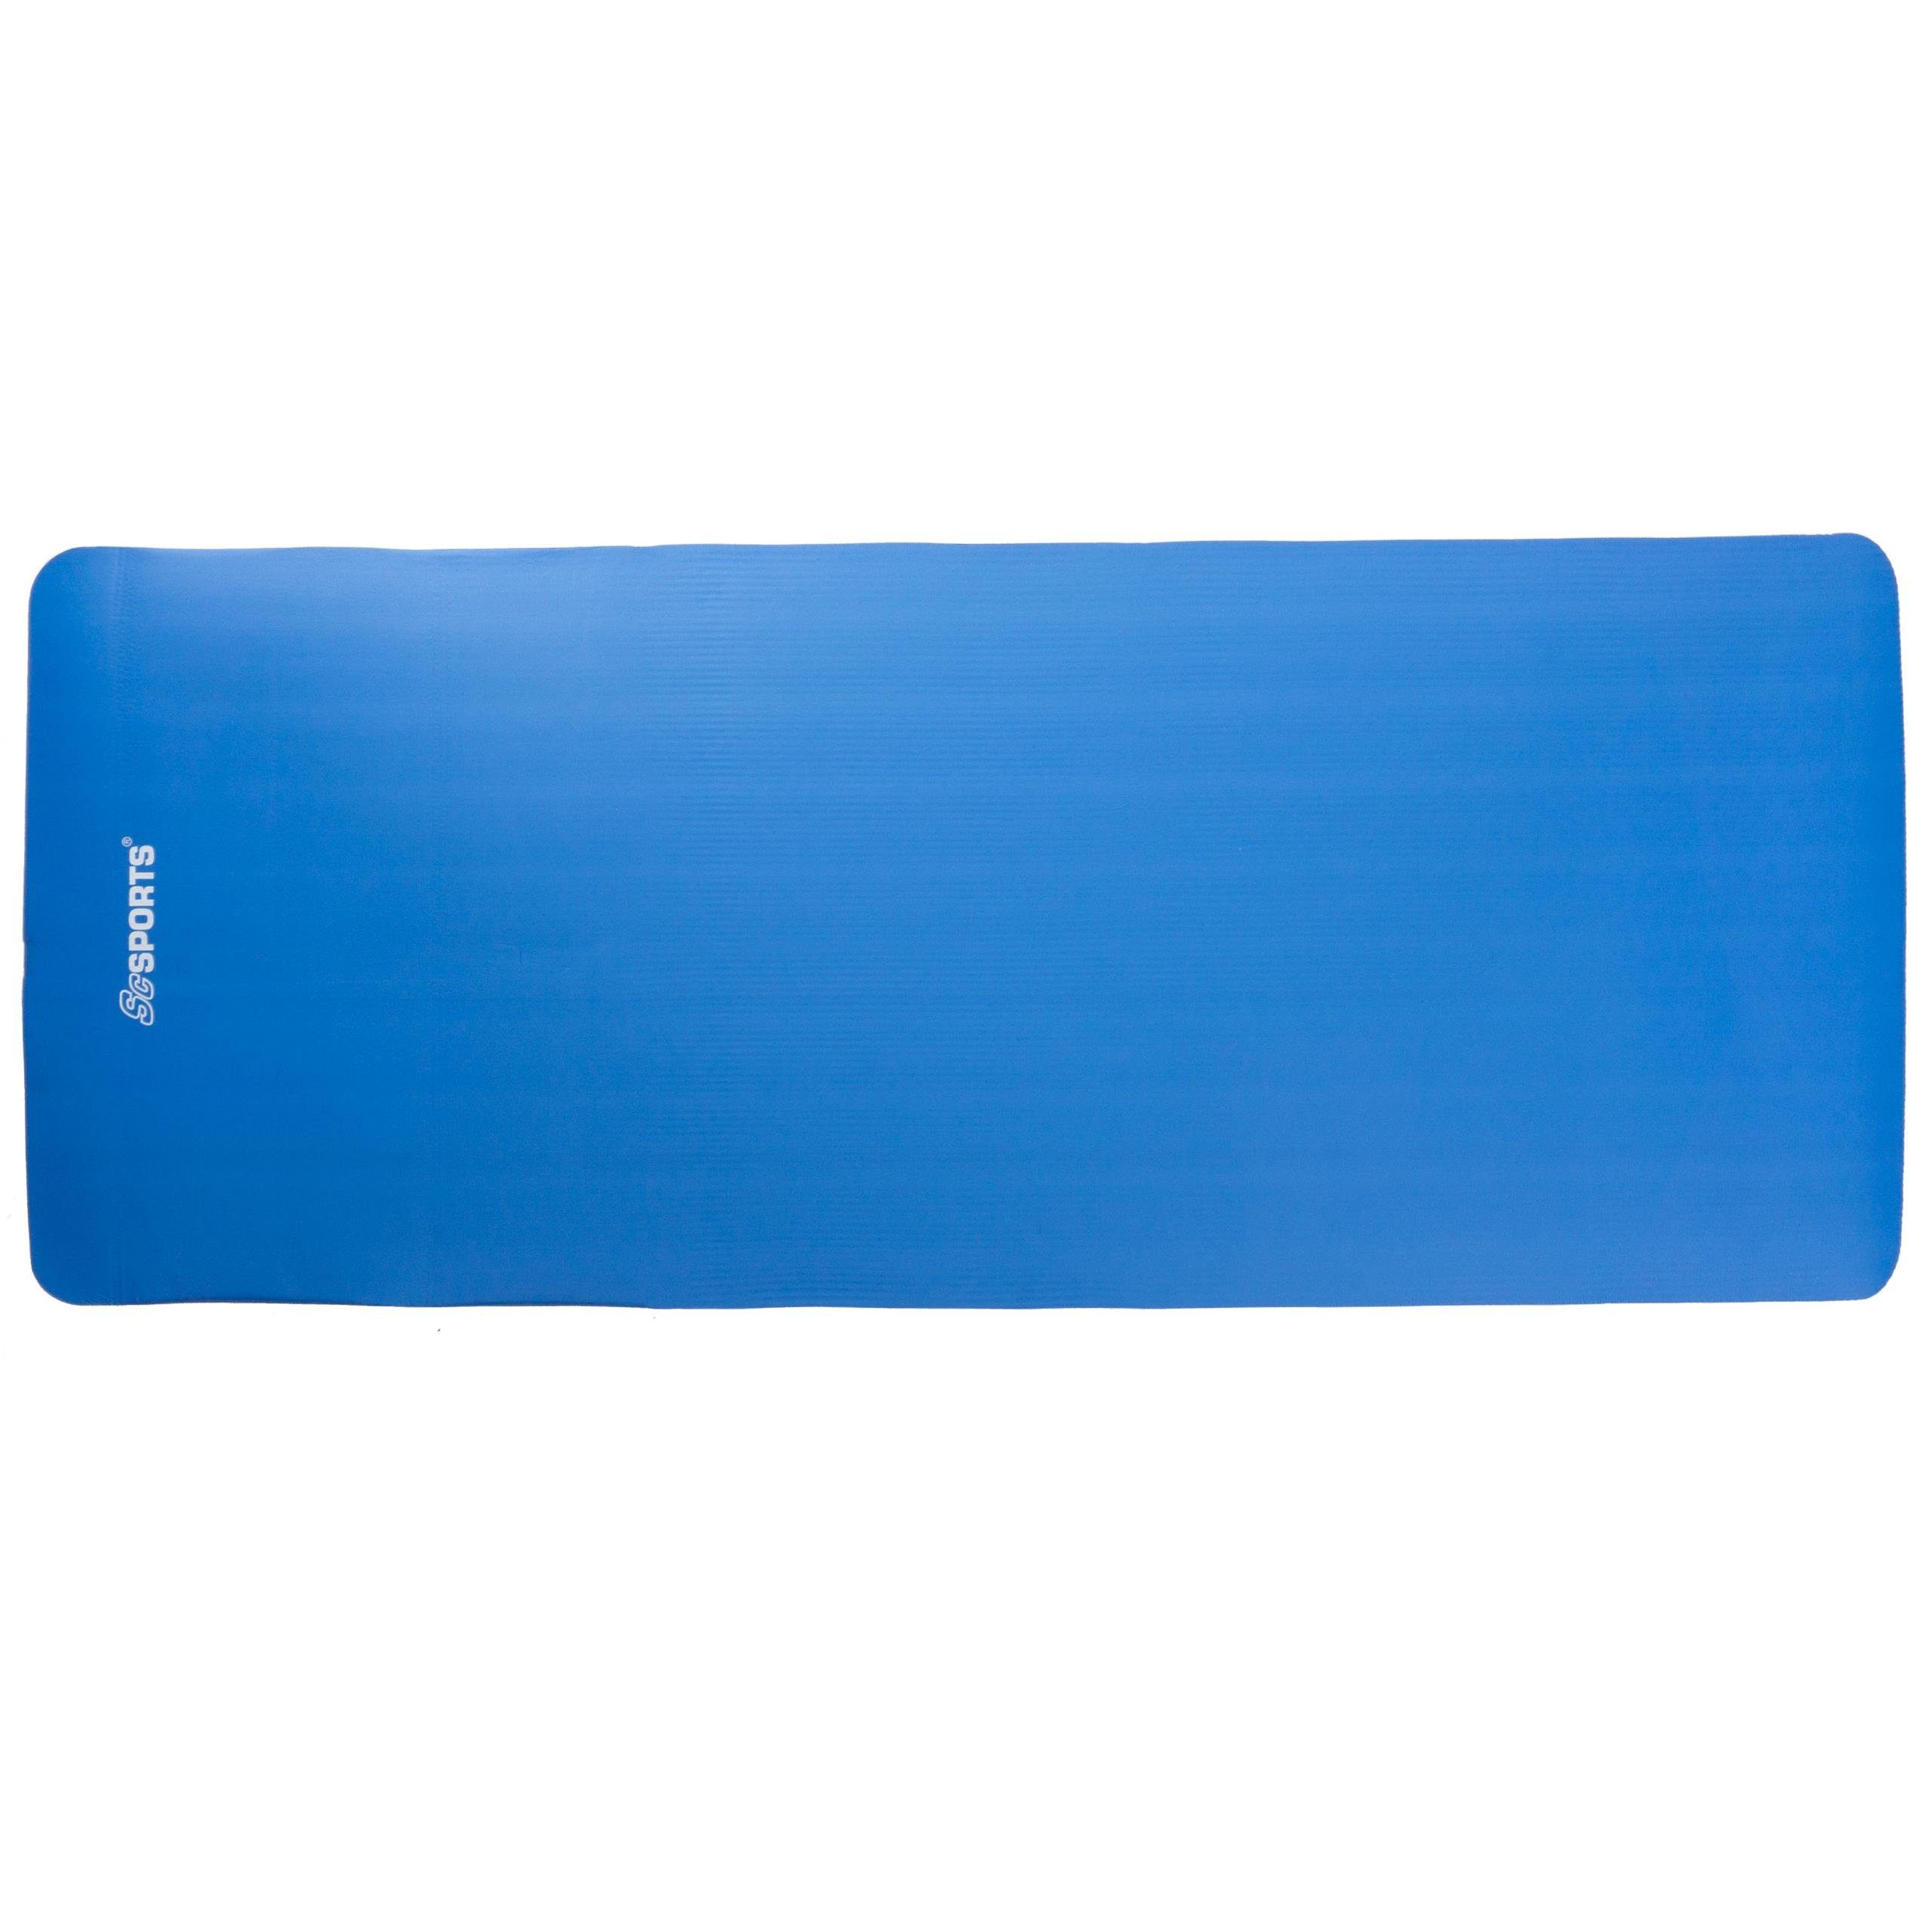 ScSPORTS® Sportmatte 190x80x1,5 cm Dunkelblau Gymnastik Tragegurt Fitness Yogamatte Matte